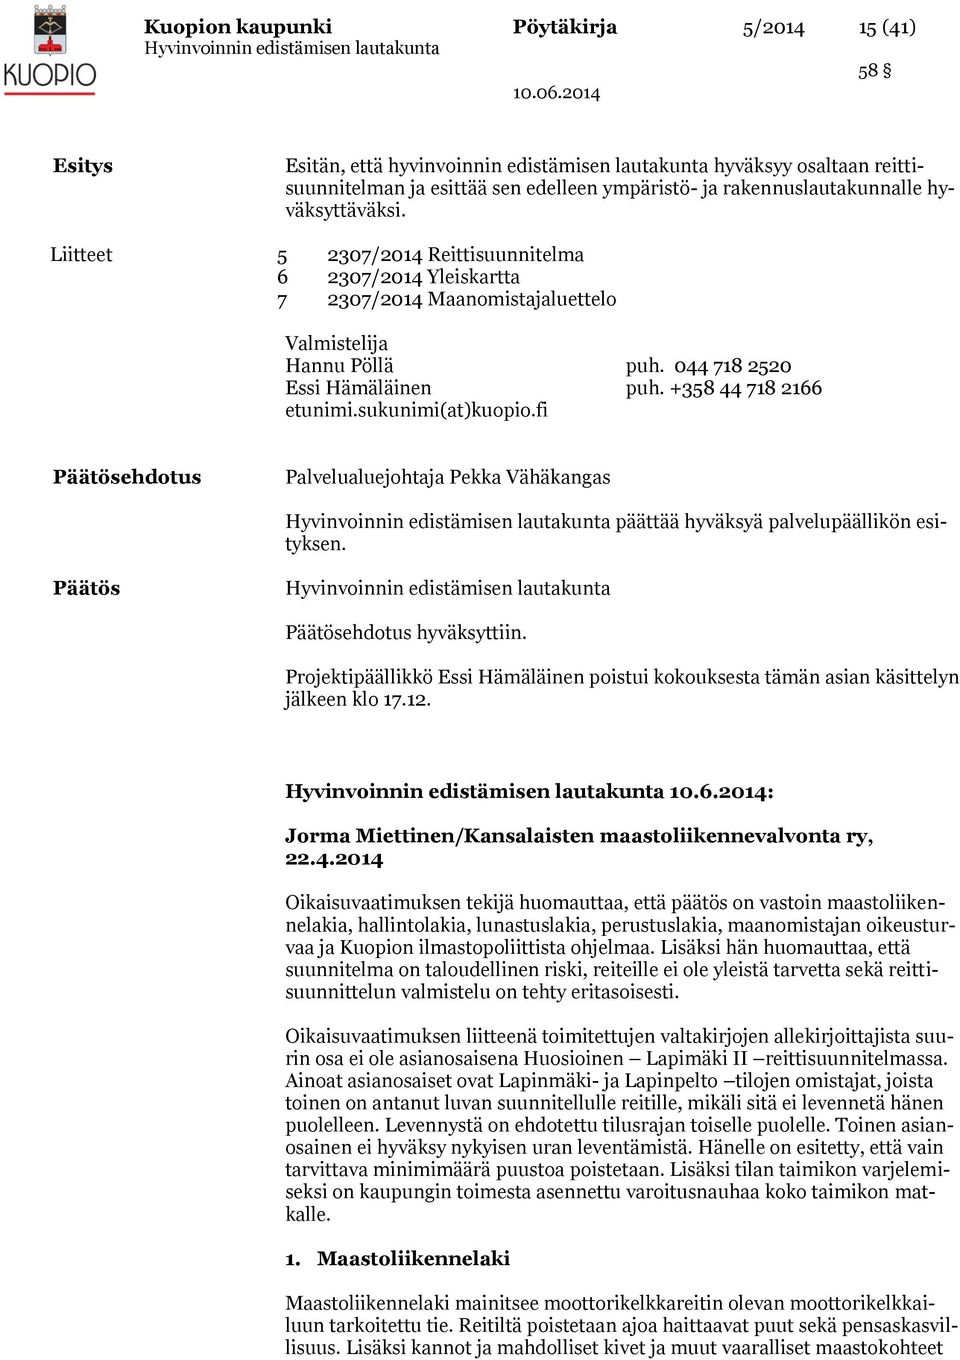 +358 44 718 2166 etunimi.sukunimi(at)kuopio.fi Päätösehdotus Palvelualuejohtaja Pekka Vähäkangas päättää hyväksyä palvelupäällikön esityksen. Päätös Päätösehdotus hyväksyttiin.